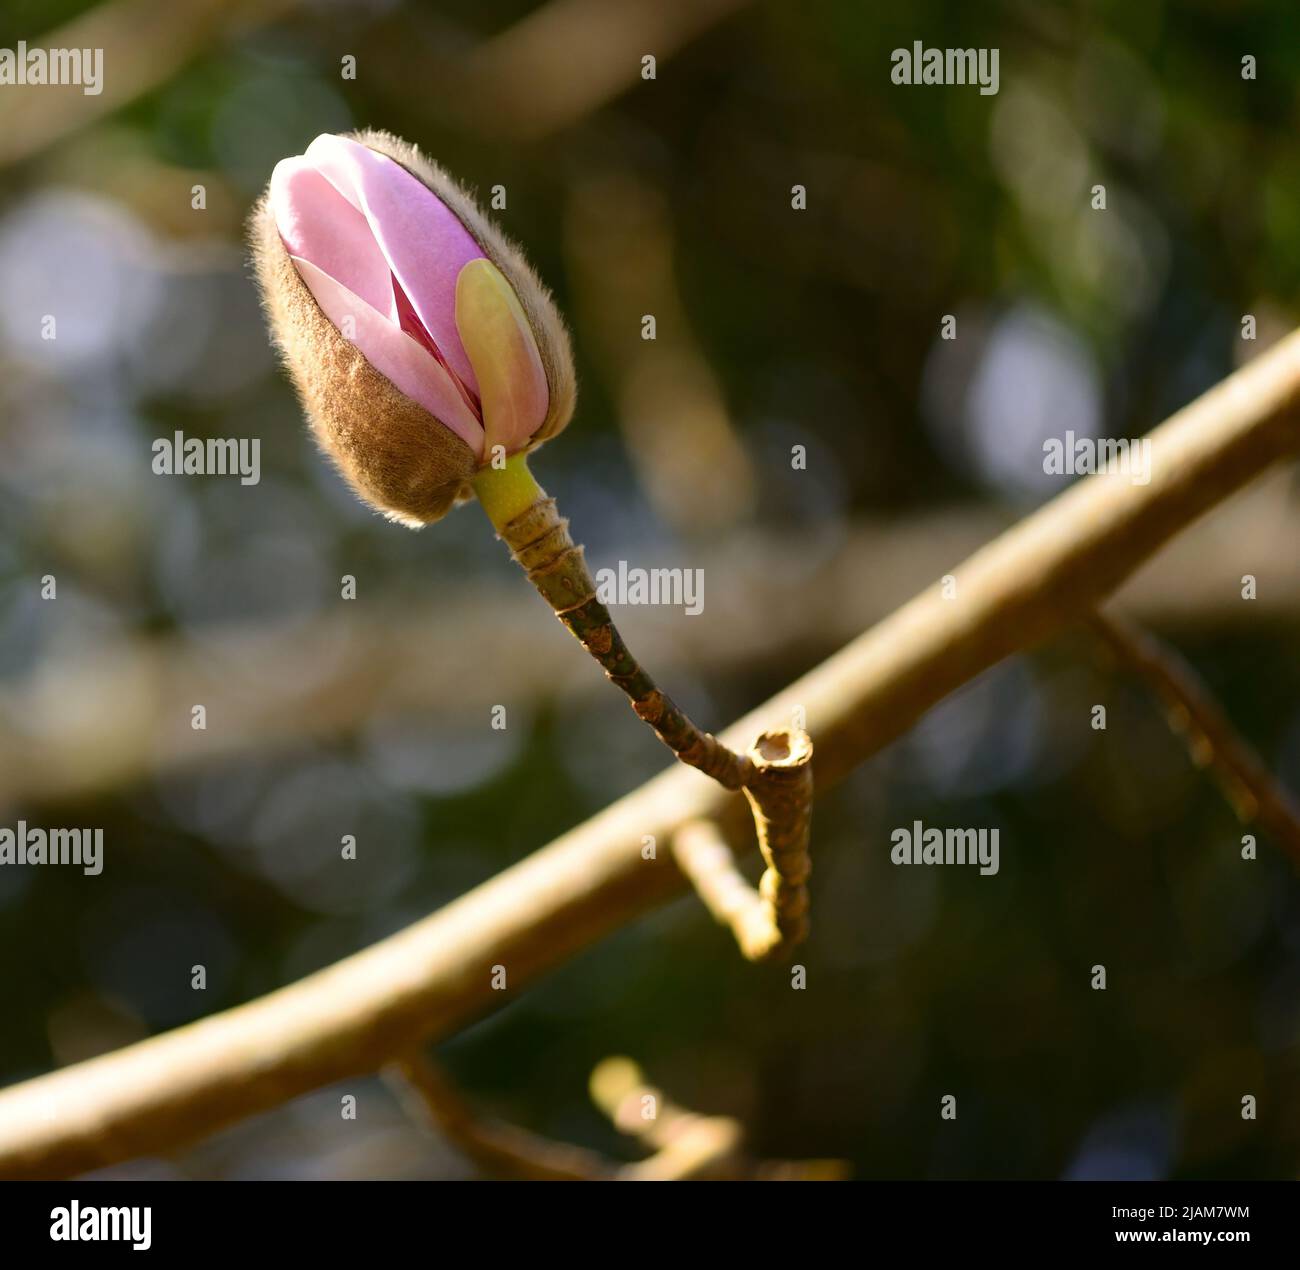 Die Knospe einer Magnolienblüte, die sich kurz vor dem Öffnen vor einem unfokussieren Hintergrund öffnet. Stockfoto